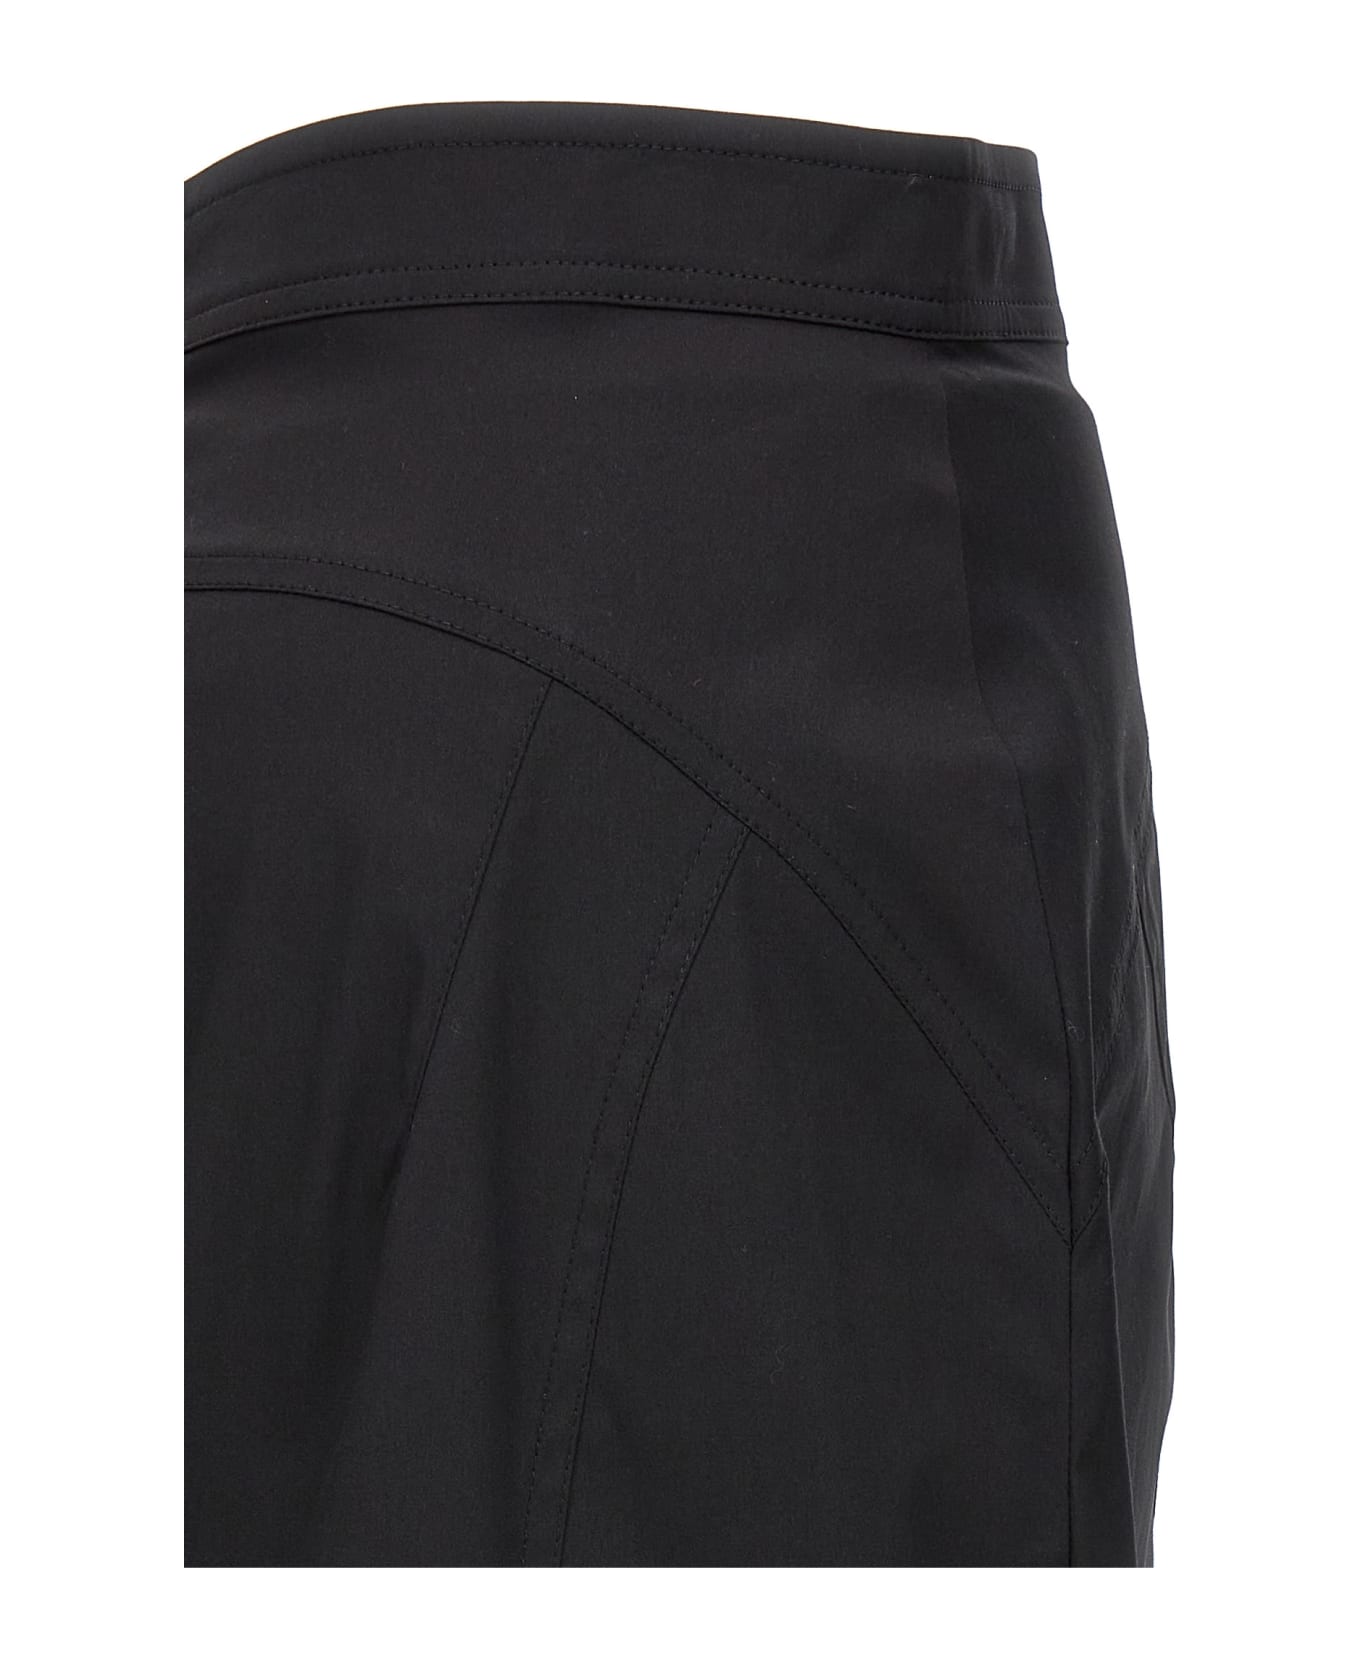 N.21 Longuette Skirt - Black   スカート